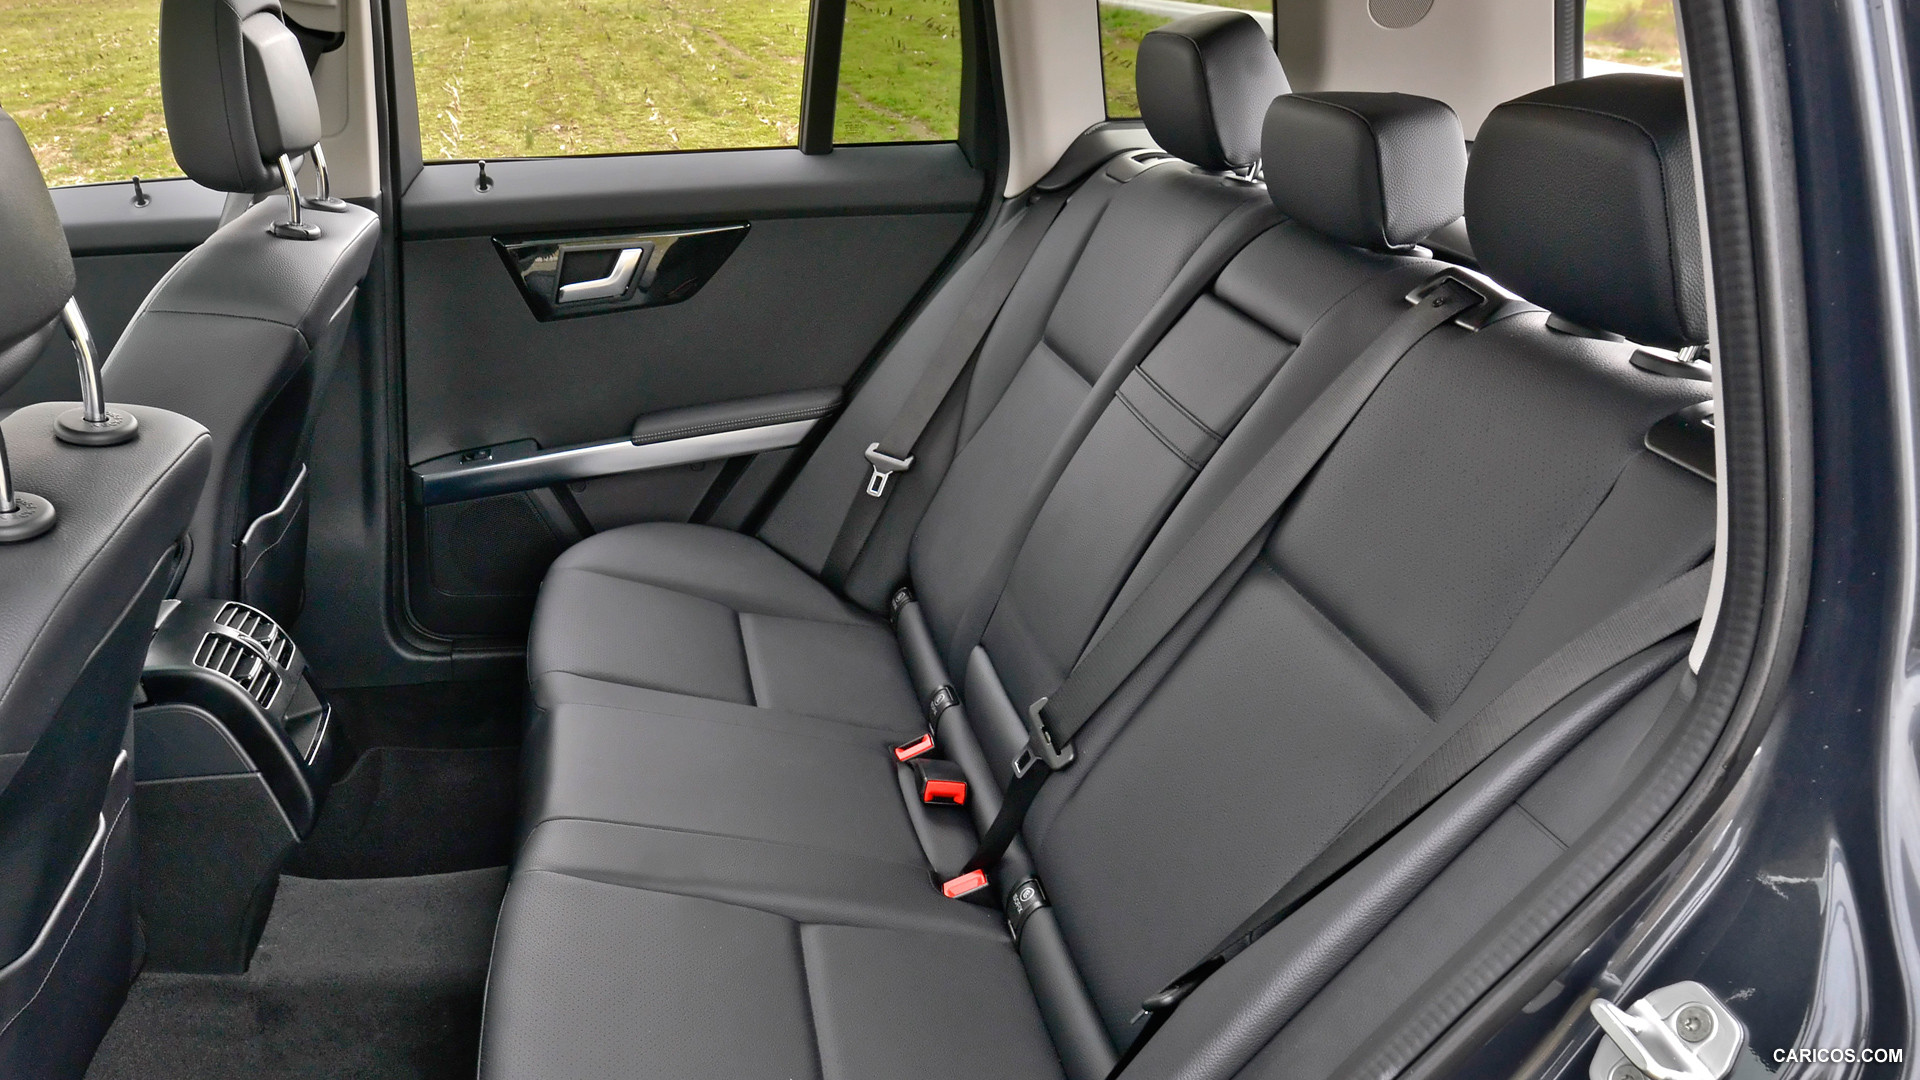 2013 Mercedes-Benz GLK250 BlueTEC - Interior Rear Seats